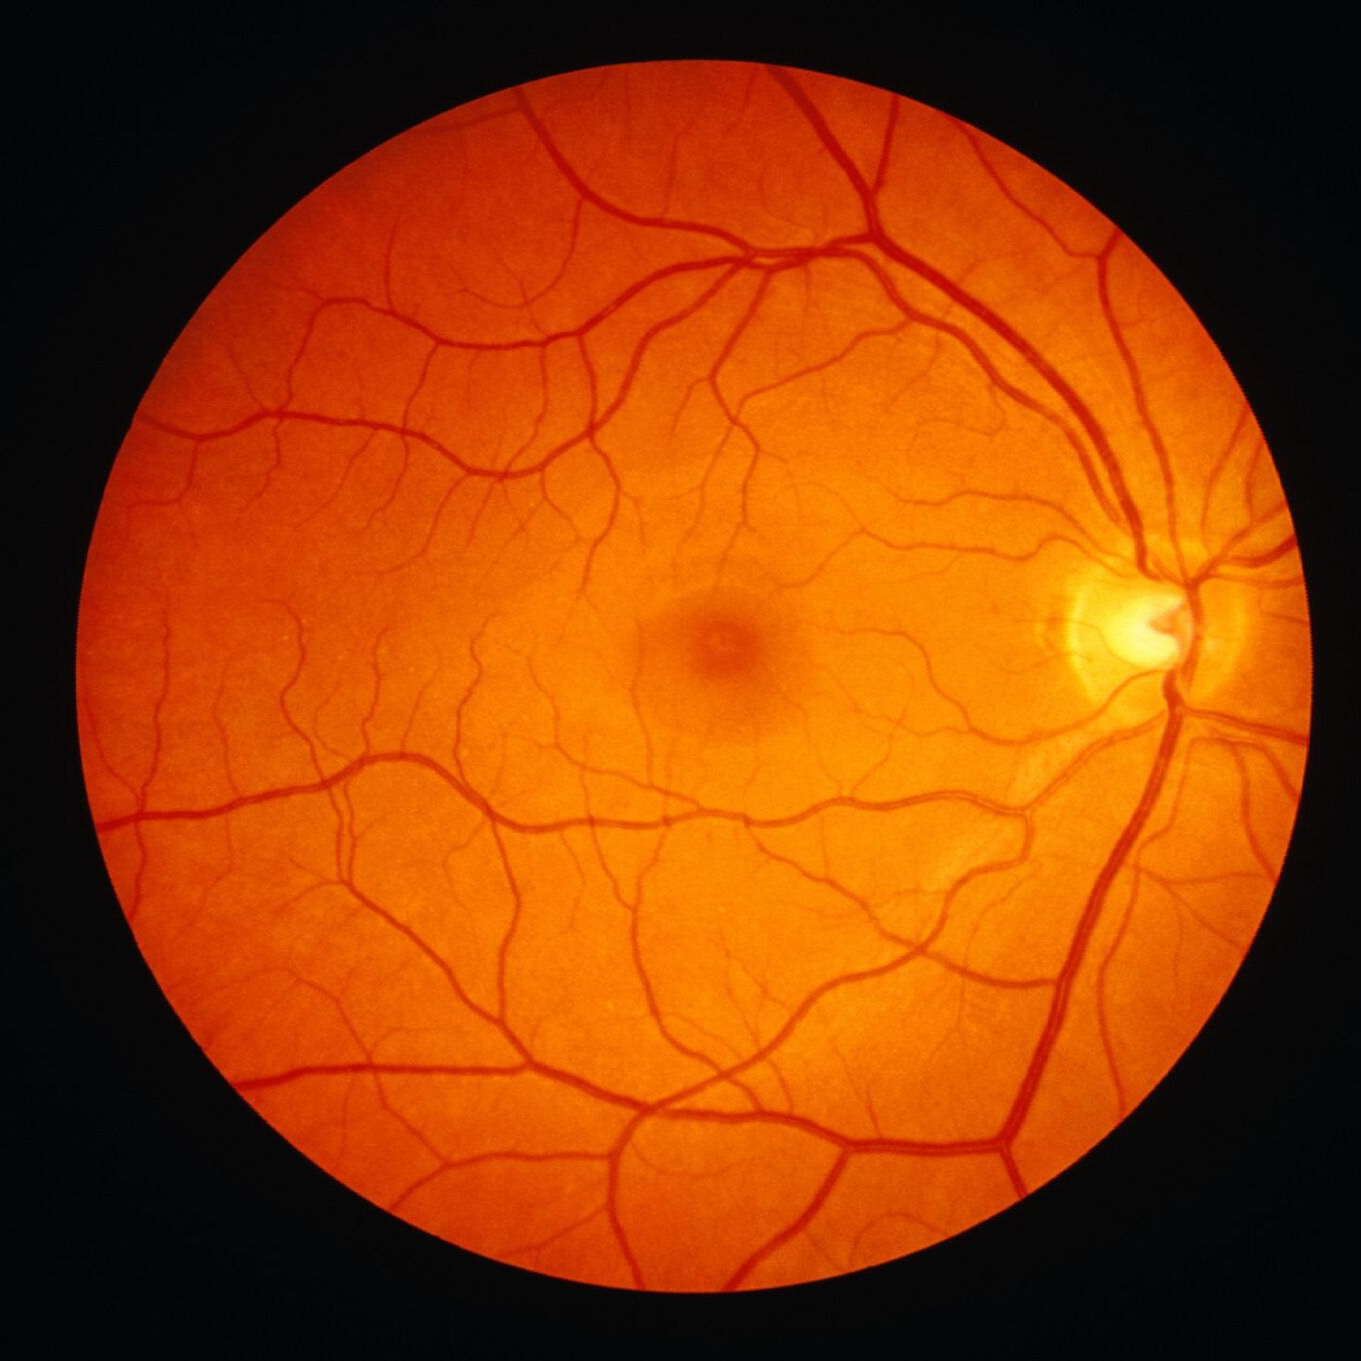 Digital retinal imaging